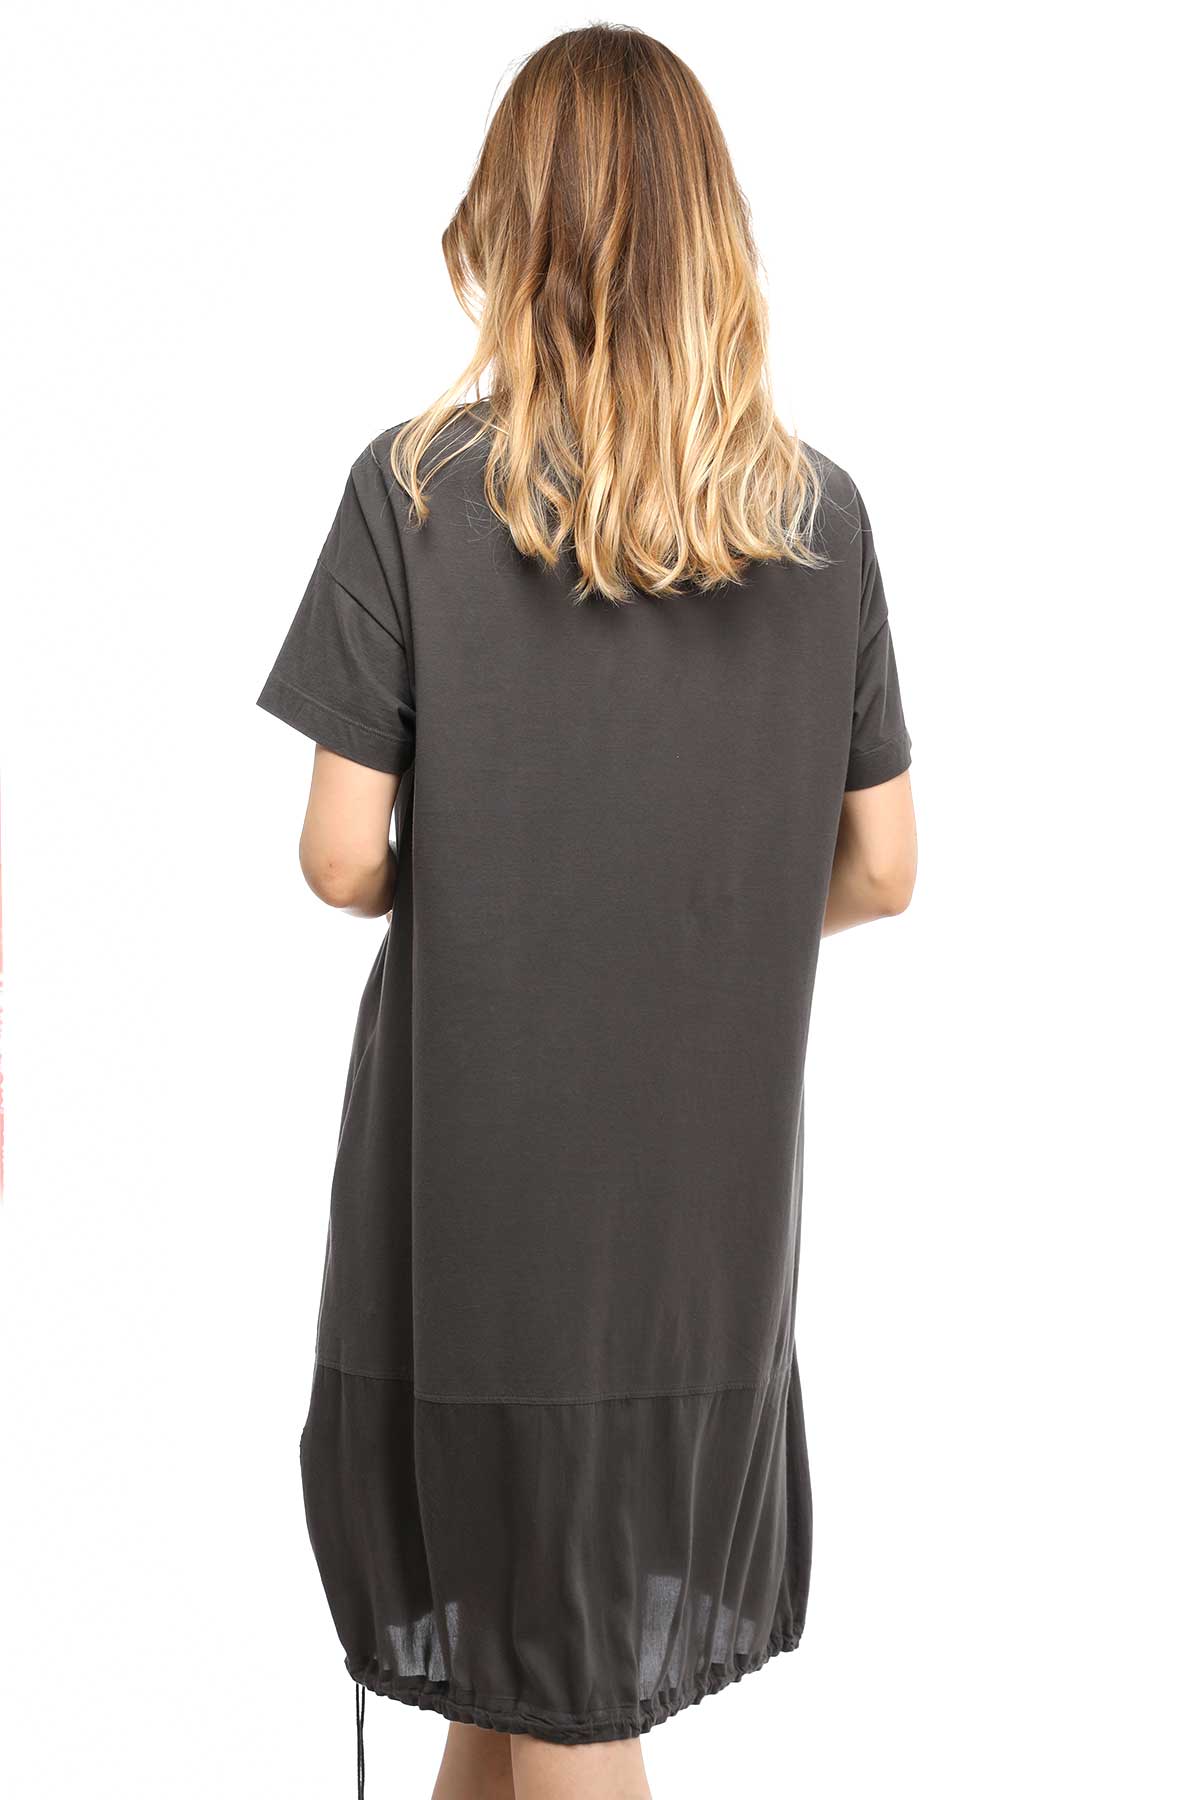 Tonet Midi Elbise-Libas Trendy Fashion Store